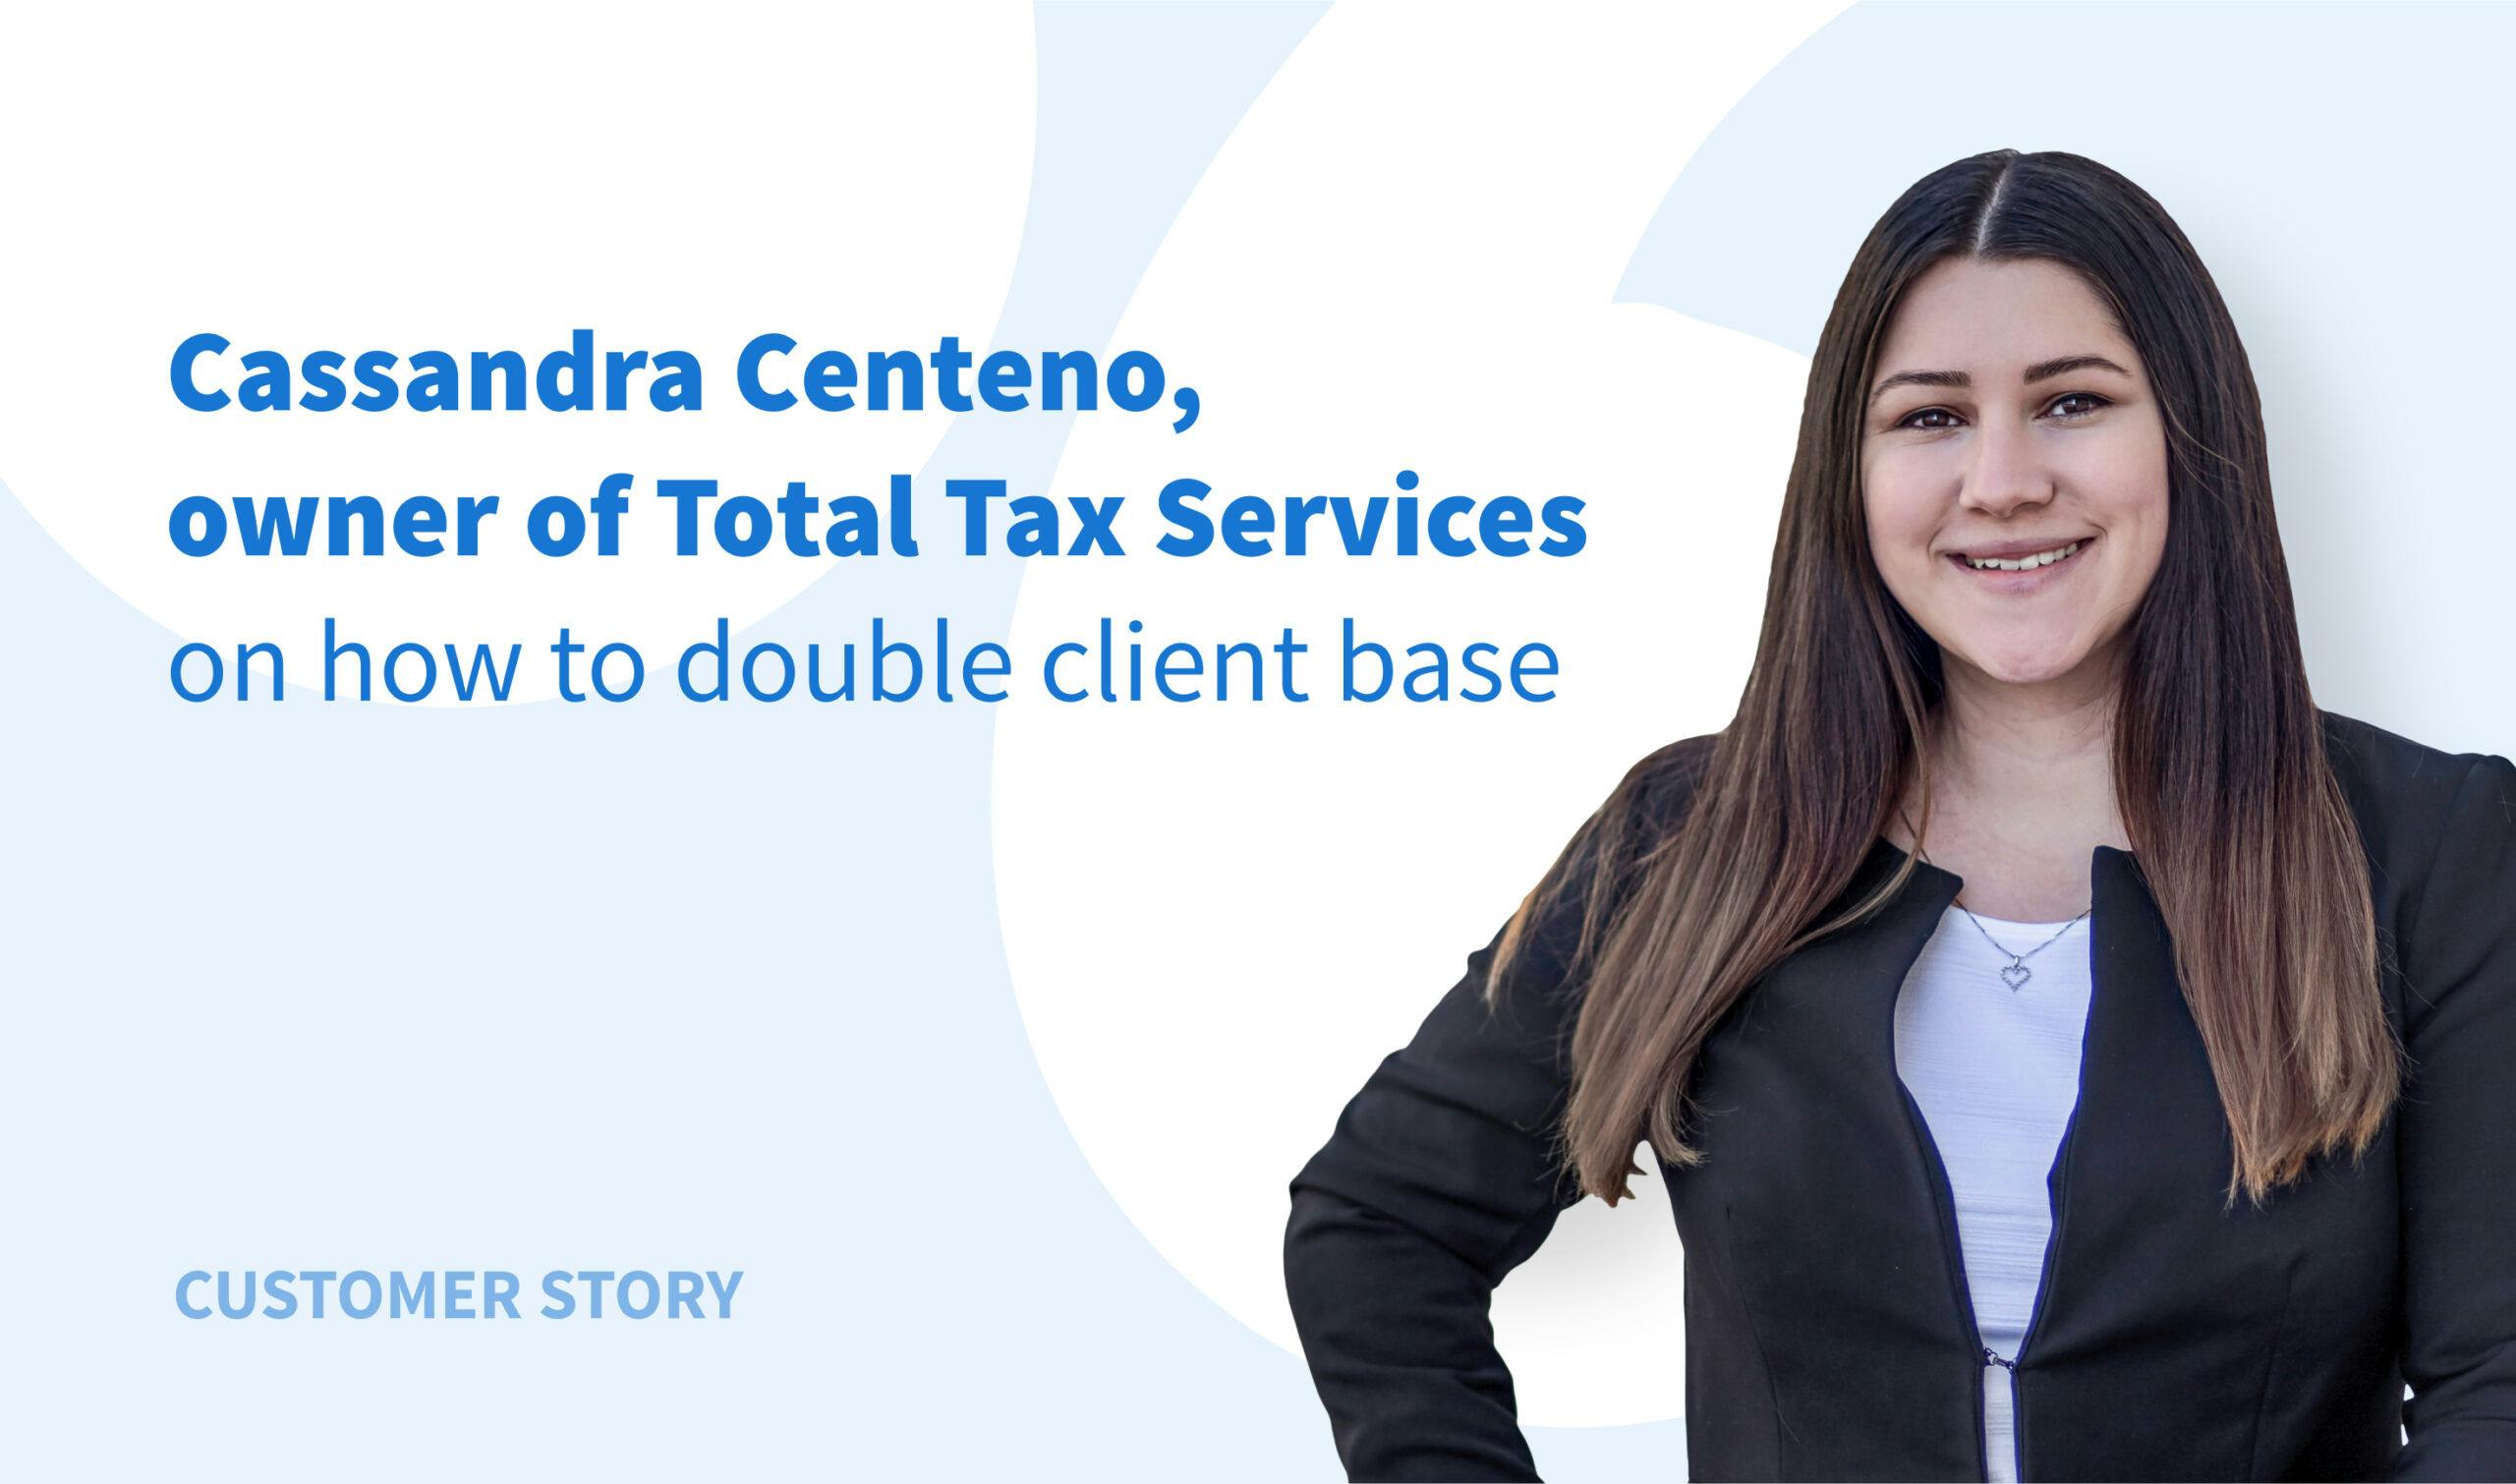 La experiencia de Total Tax Services: Cómo doblar su base de clientes con mínimo esfuerzo